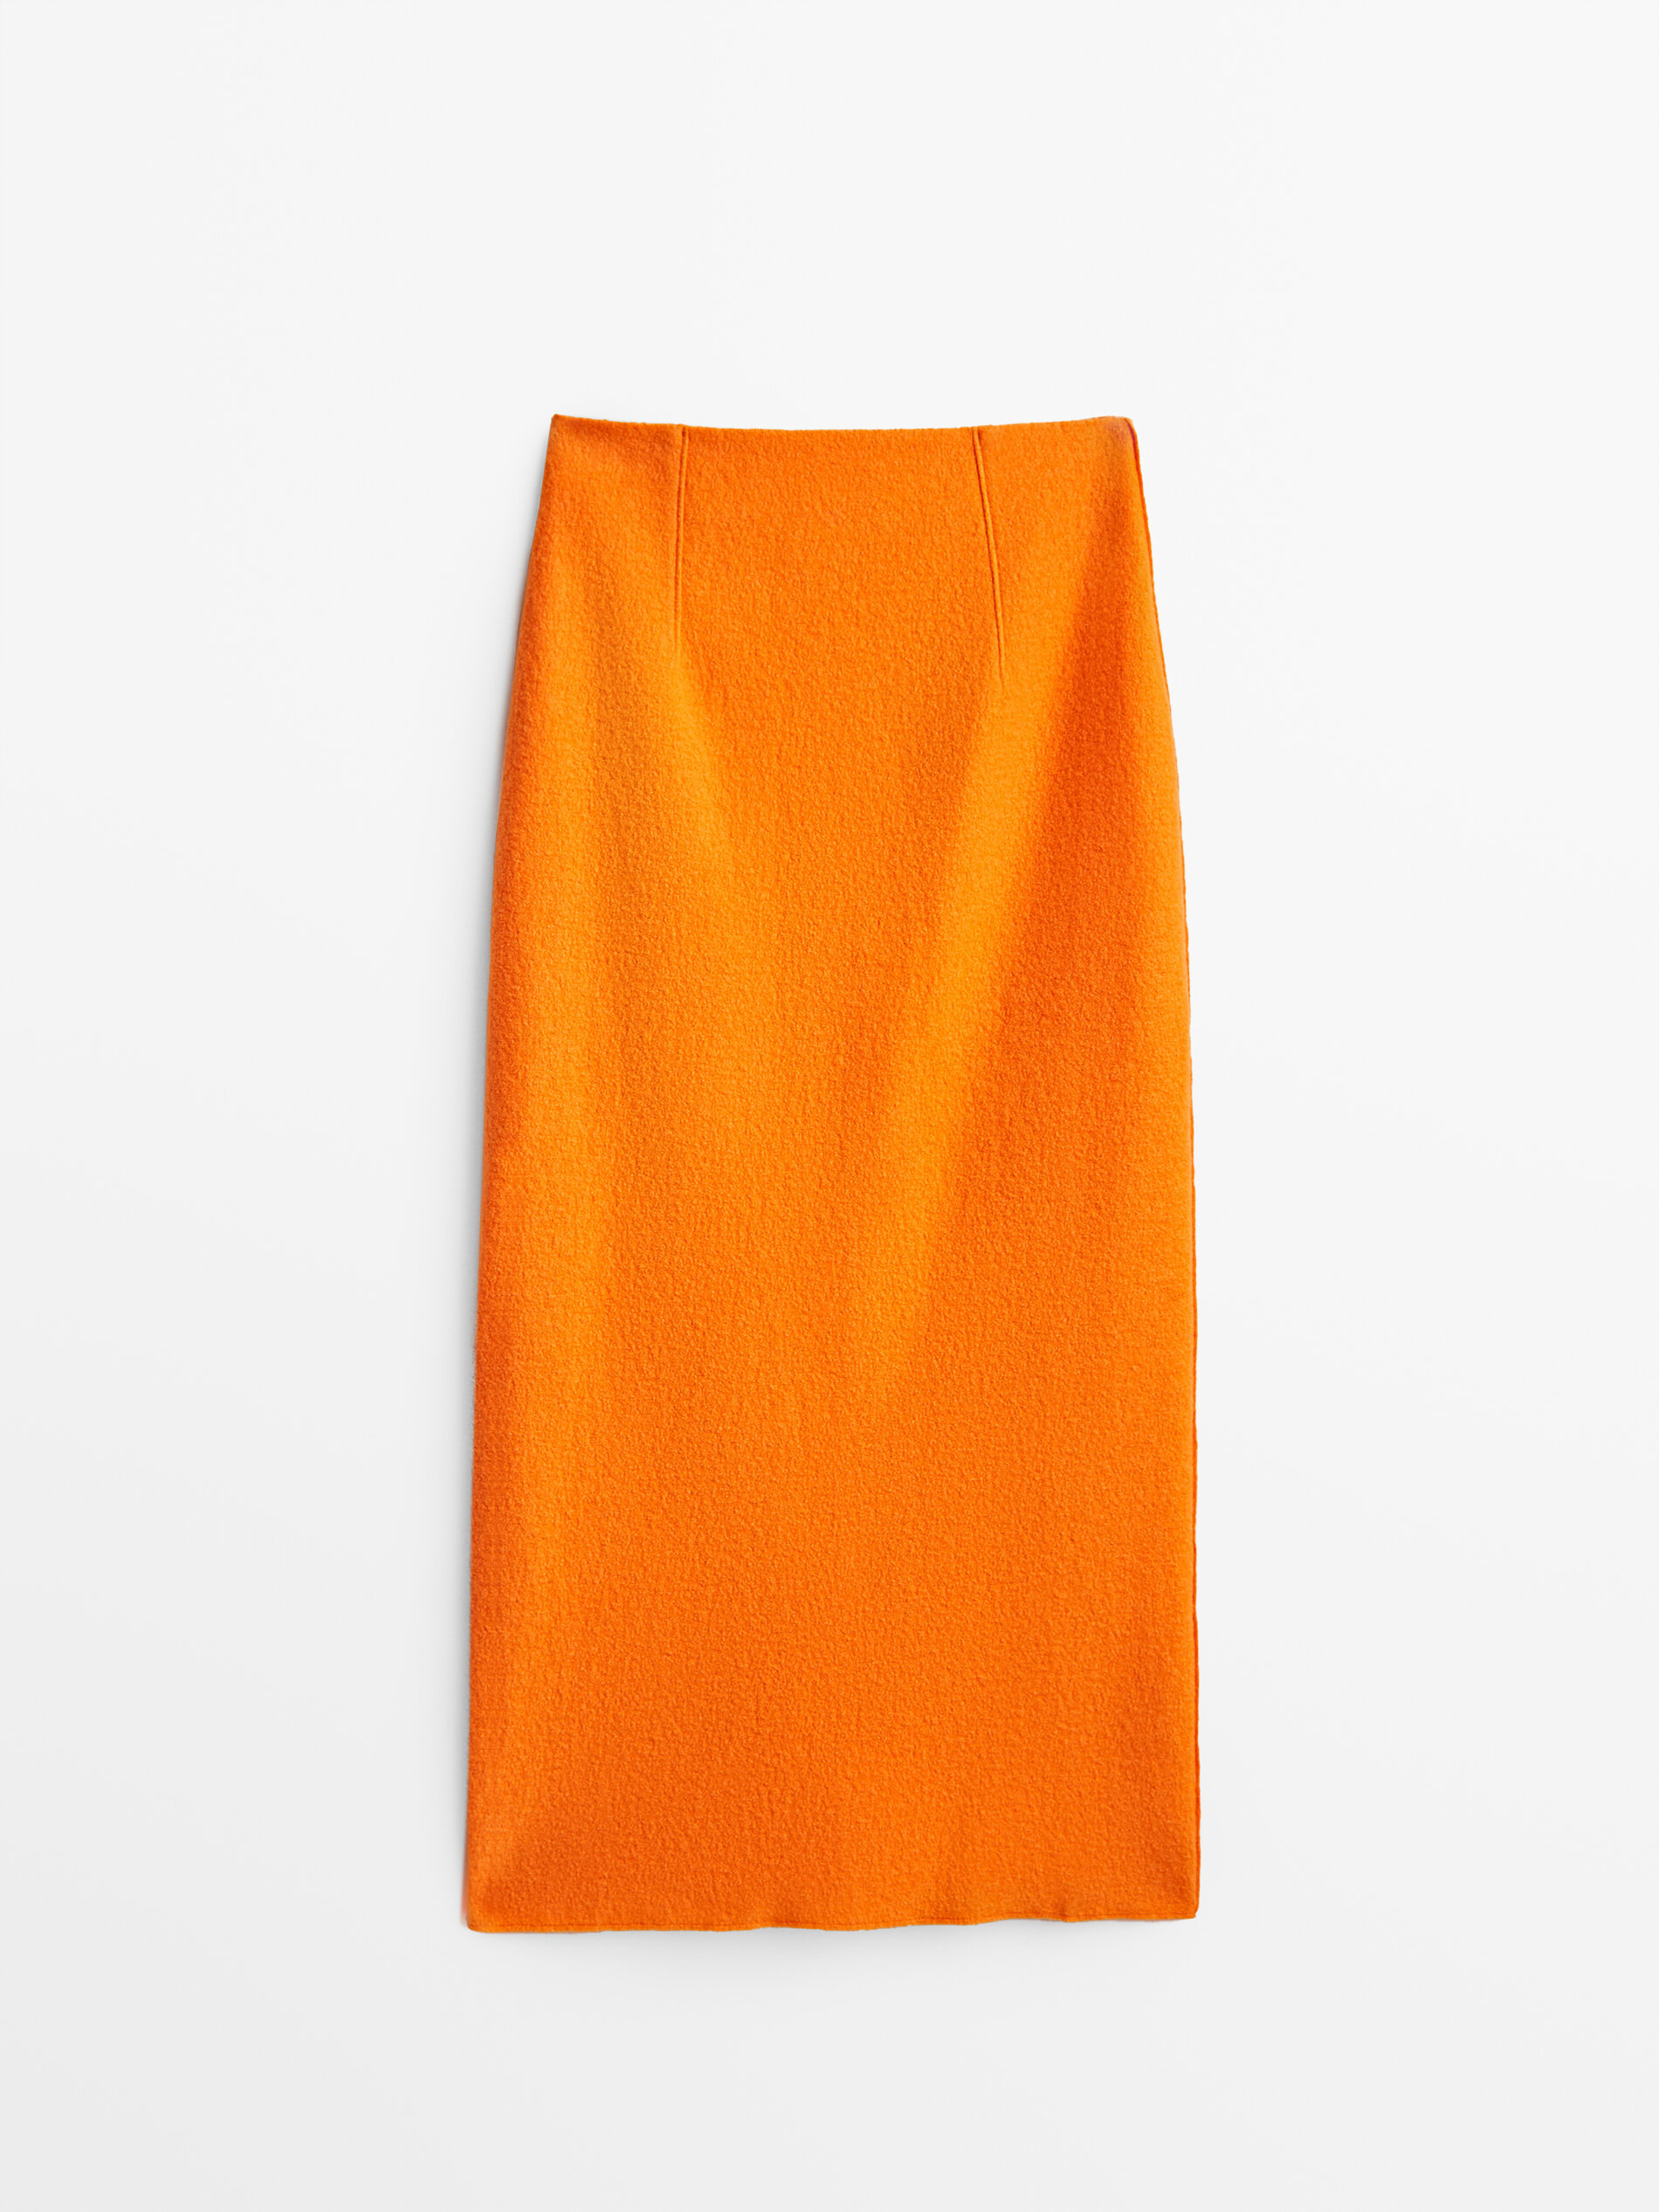 Falda en color mandarina de Massimo Dutti (89,95 euros).